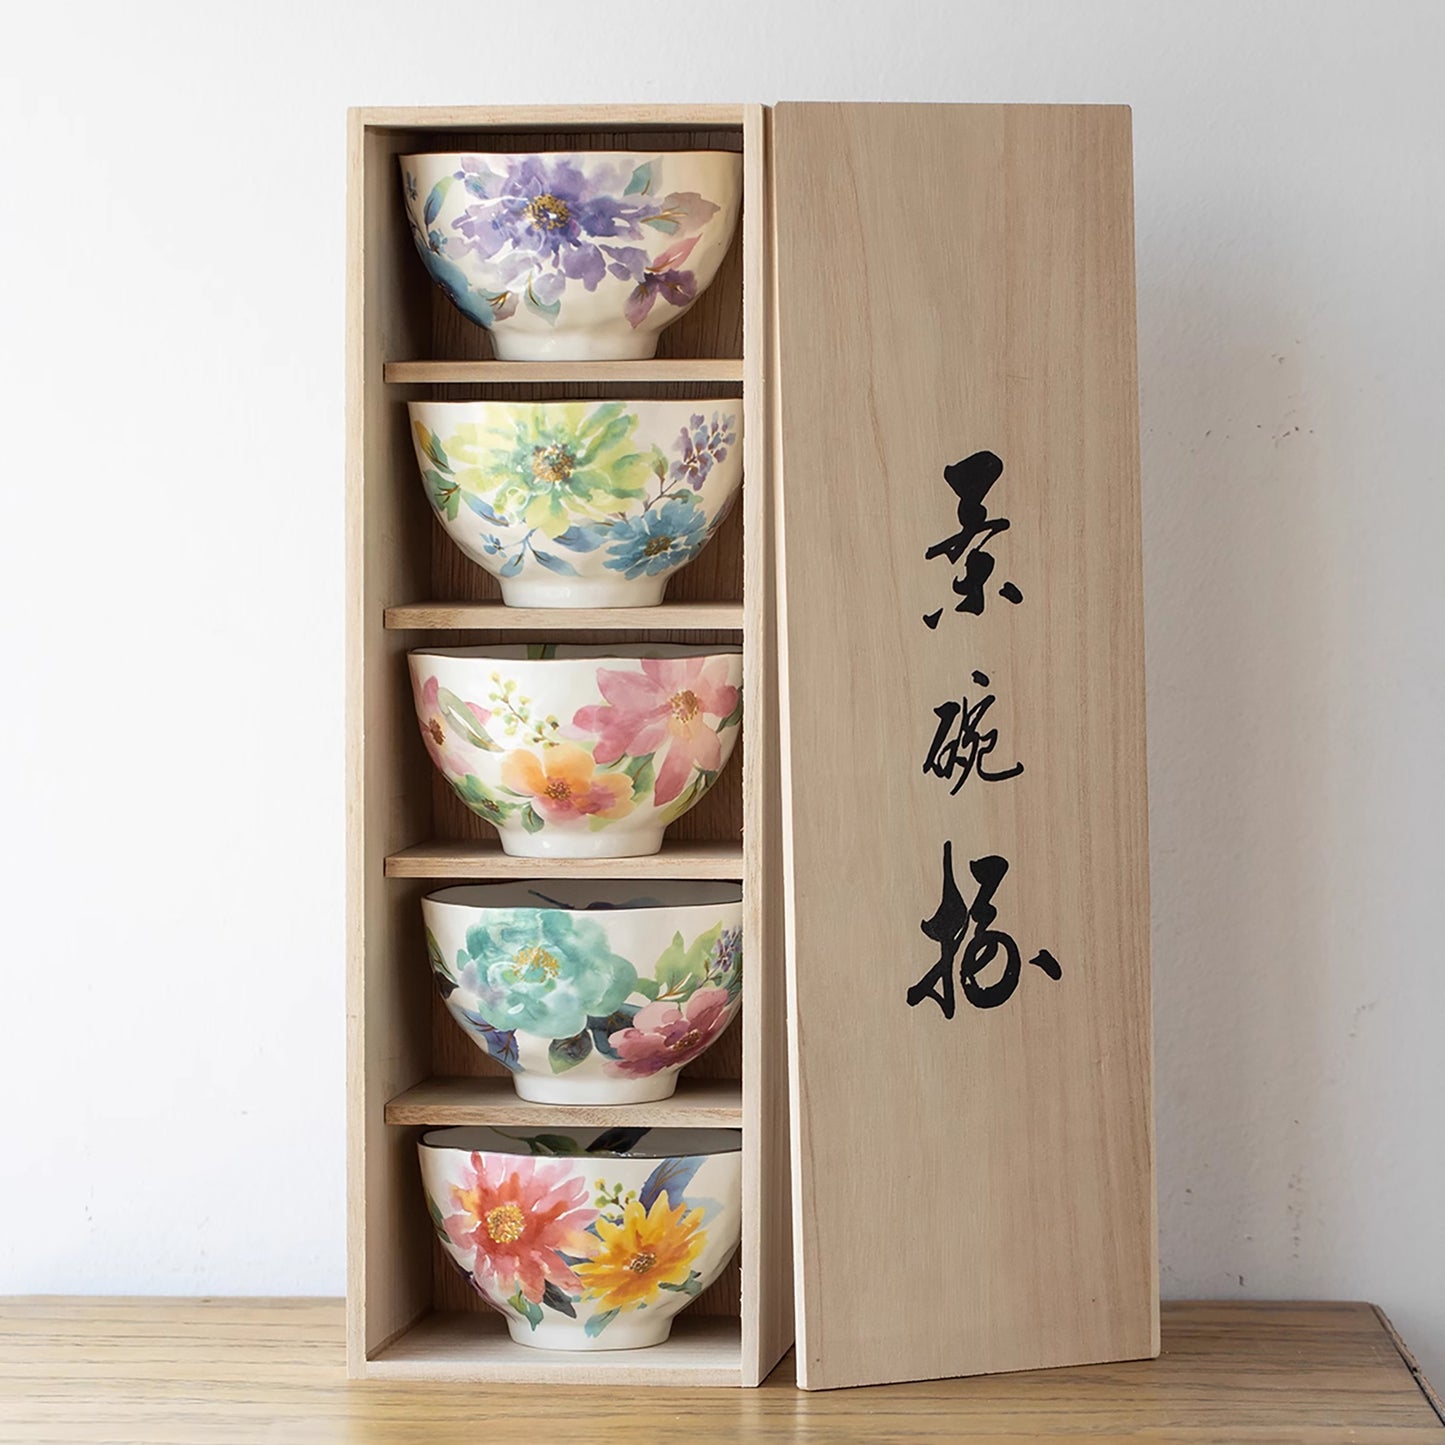 Bols Minoyaki avec belle design fleurs d'artiste